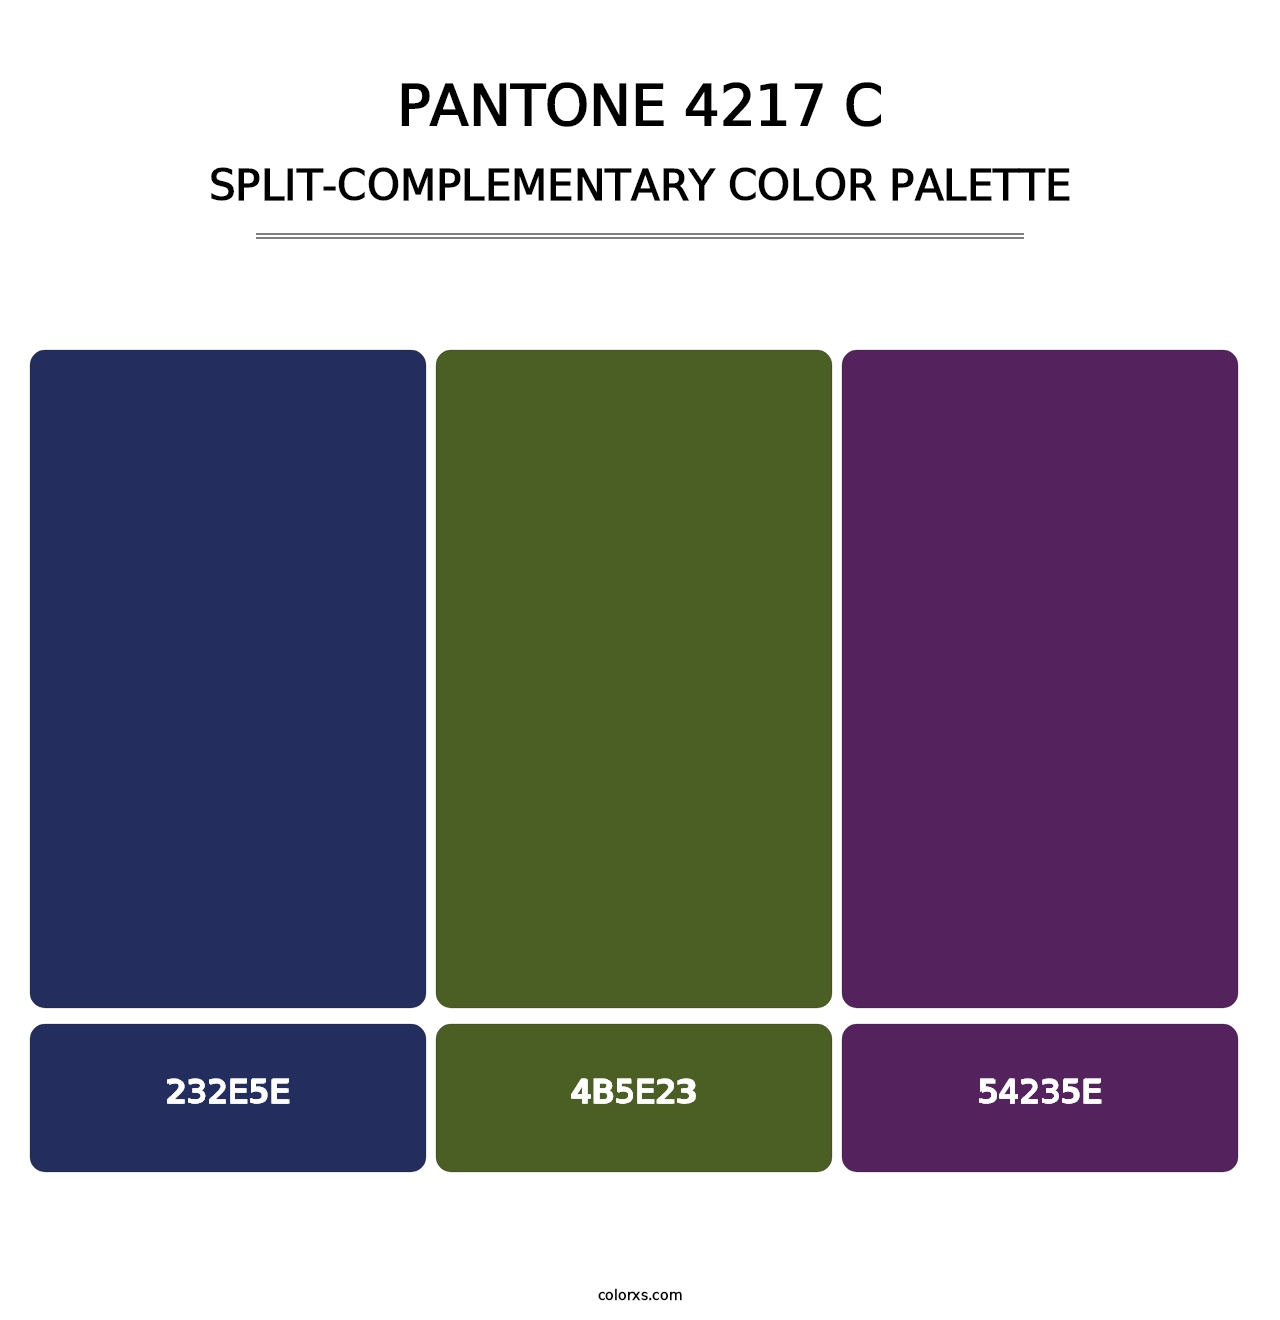 PANTONE 4217 C - Split-Complementary Color Palette